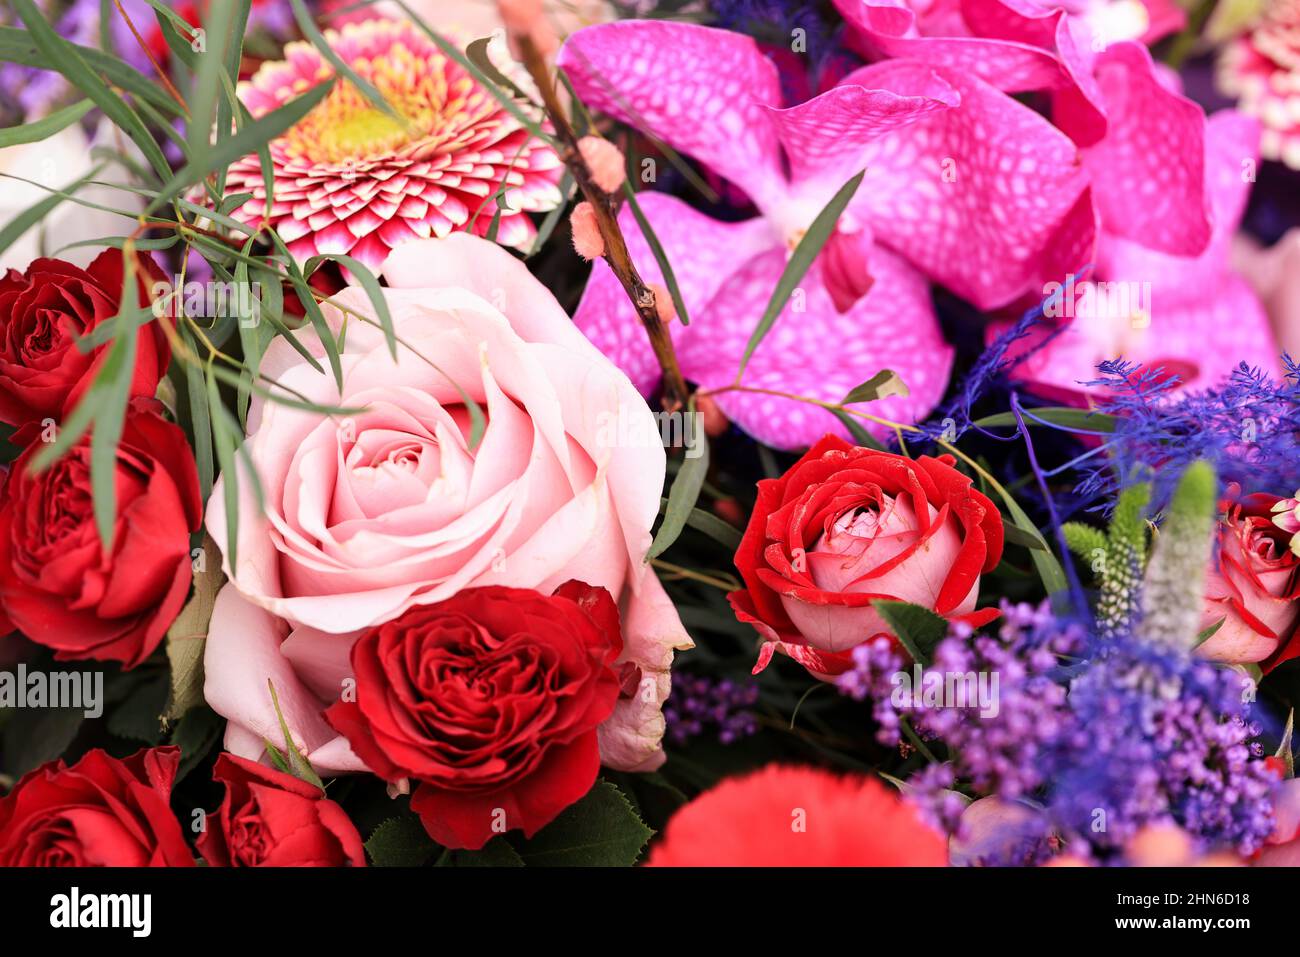 Fotos mit einem Blumenstrauß oder Strauß für den Valetines Day, bestehend aus Rosen, Orchideen und anderen Blumen. Stockfoto